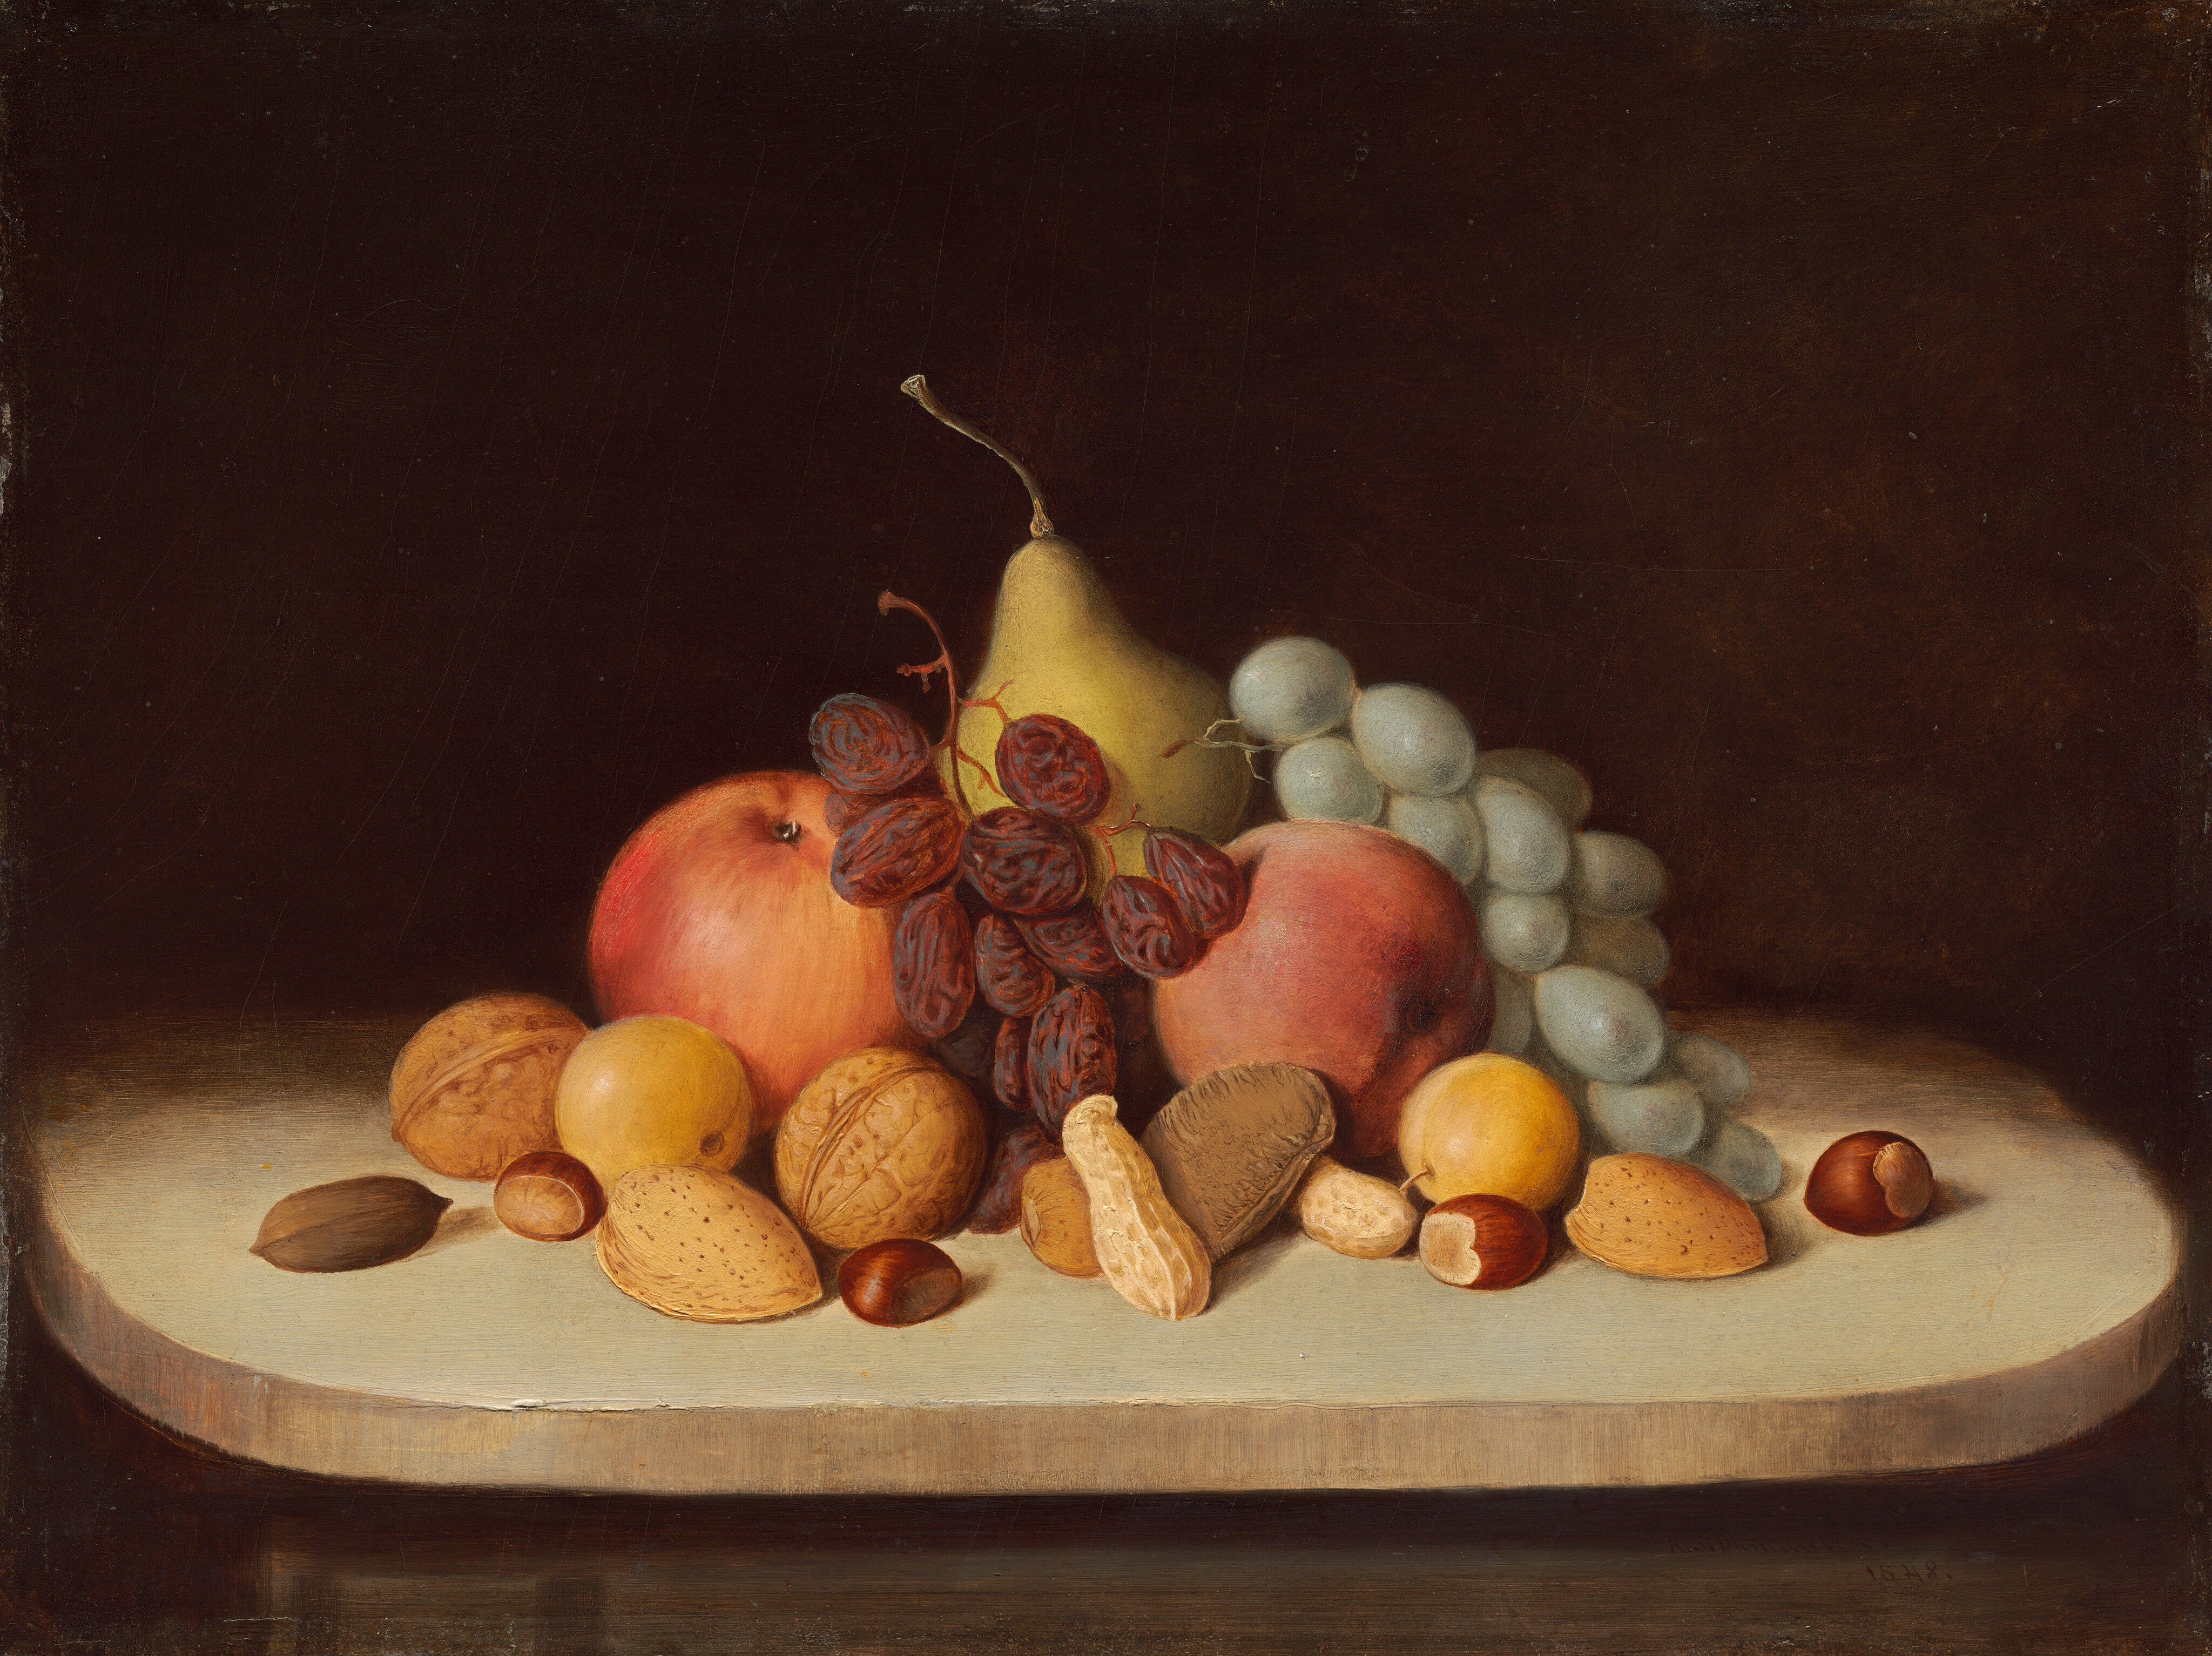 水果和坚果的静物画 by 罗伯特 邓肯森 - 1848年 - 30.48 x 40.64 厘米 